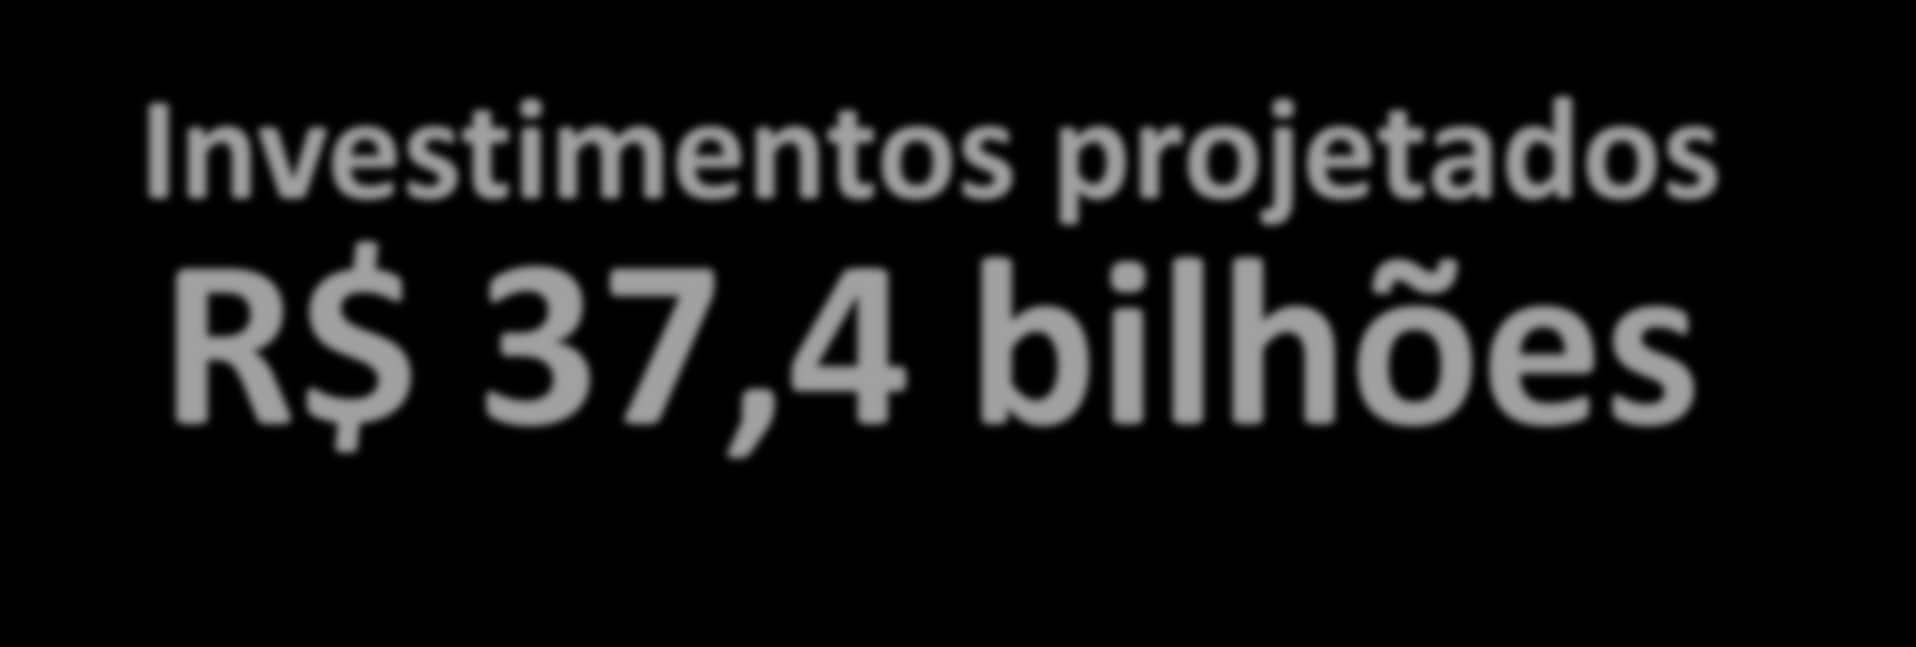 NOVA ETAPA DE CONCESSÕES Portos Investimentos projetados R$ 37,4 bilhões 50 novos